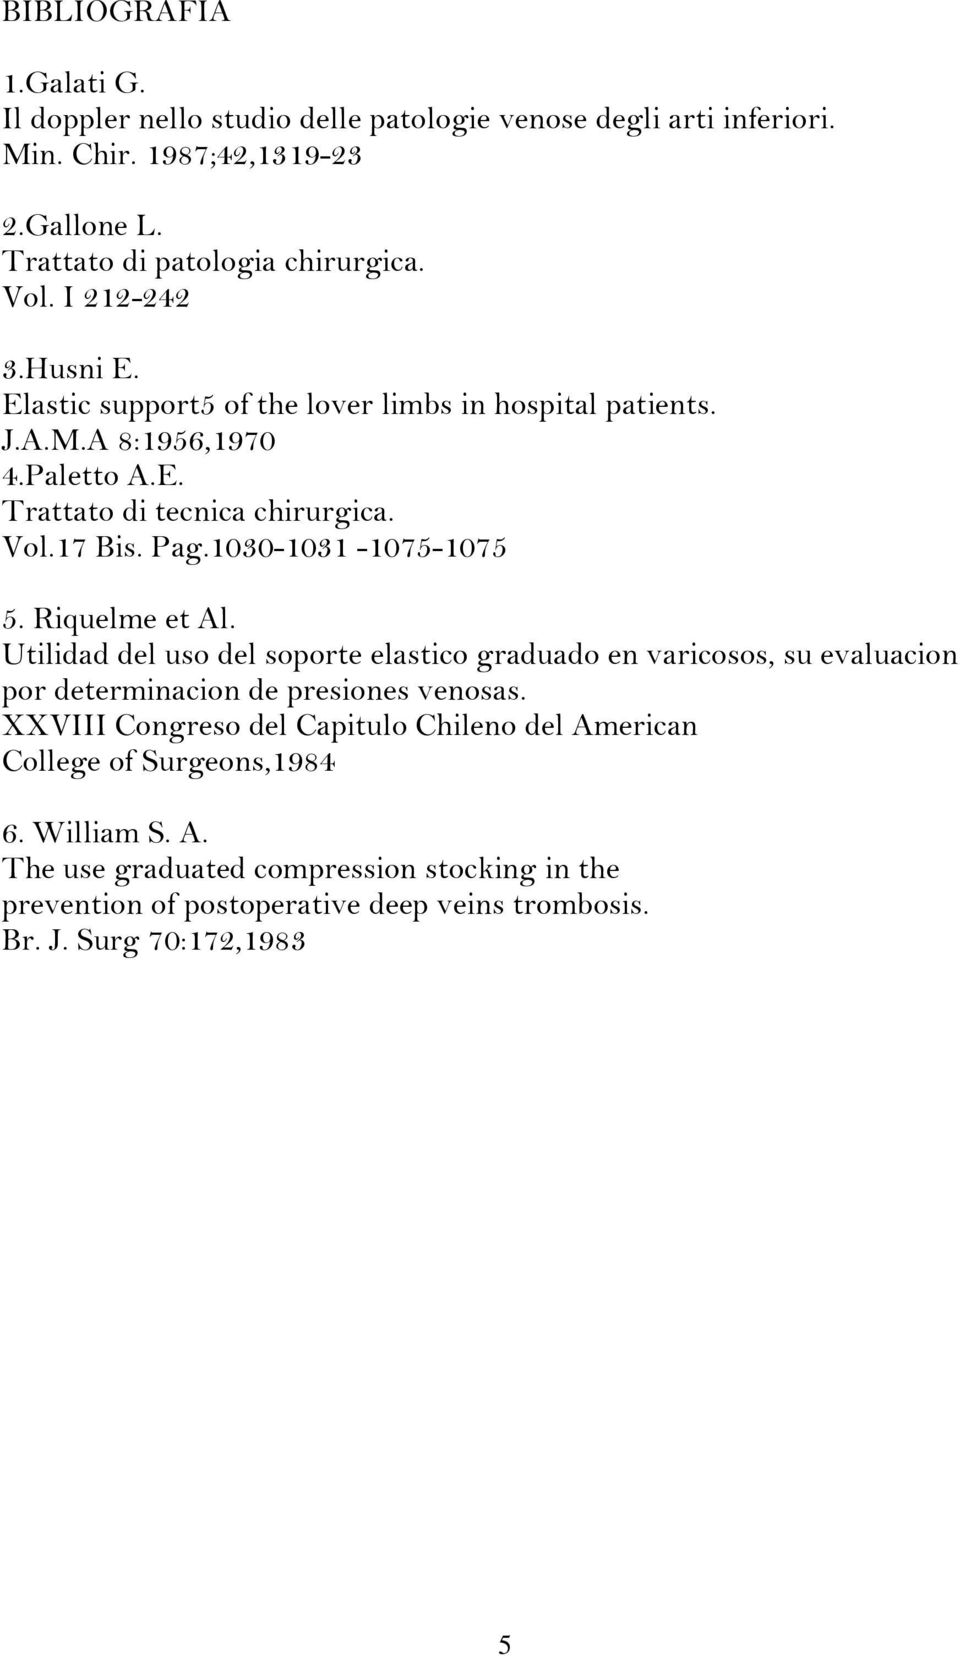 1030-1031 -1075-1075 5. Riquelme et Al. Utilidad del uso del soporte elastico graduado en varicosos, su evaluacion por determinacion de presiones venosas.